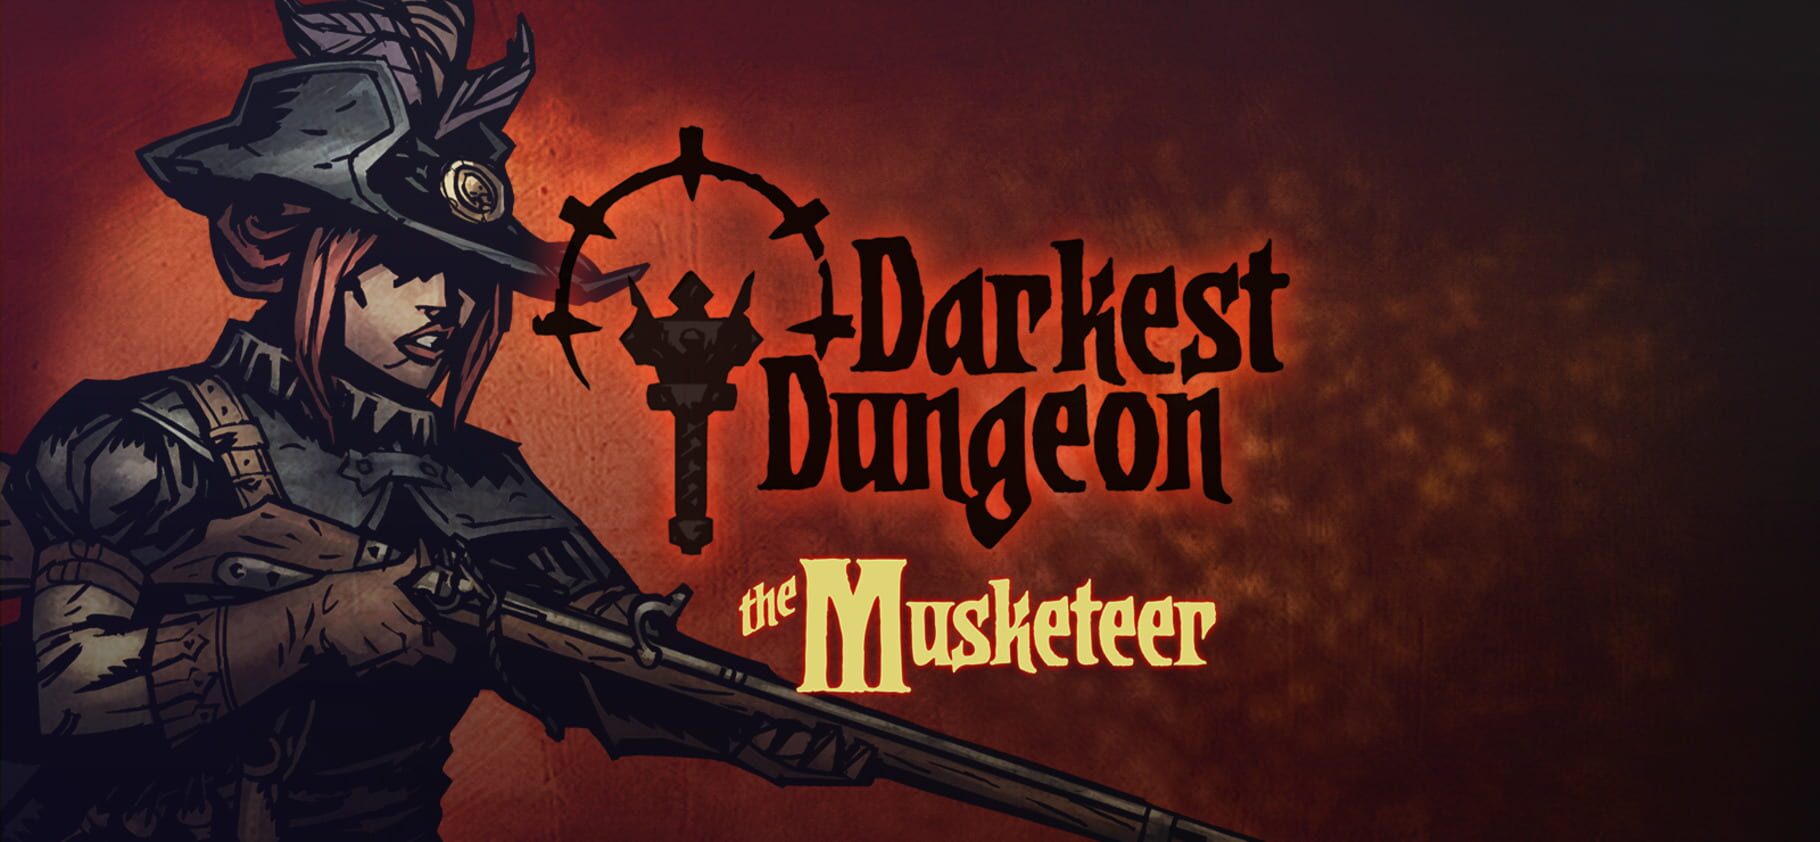 Darkest Dungeon: The Musketeer artwork